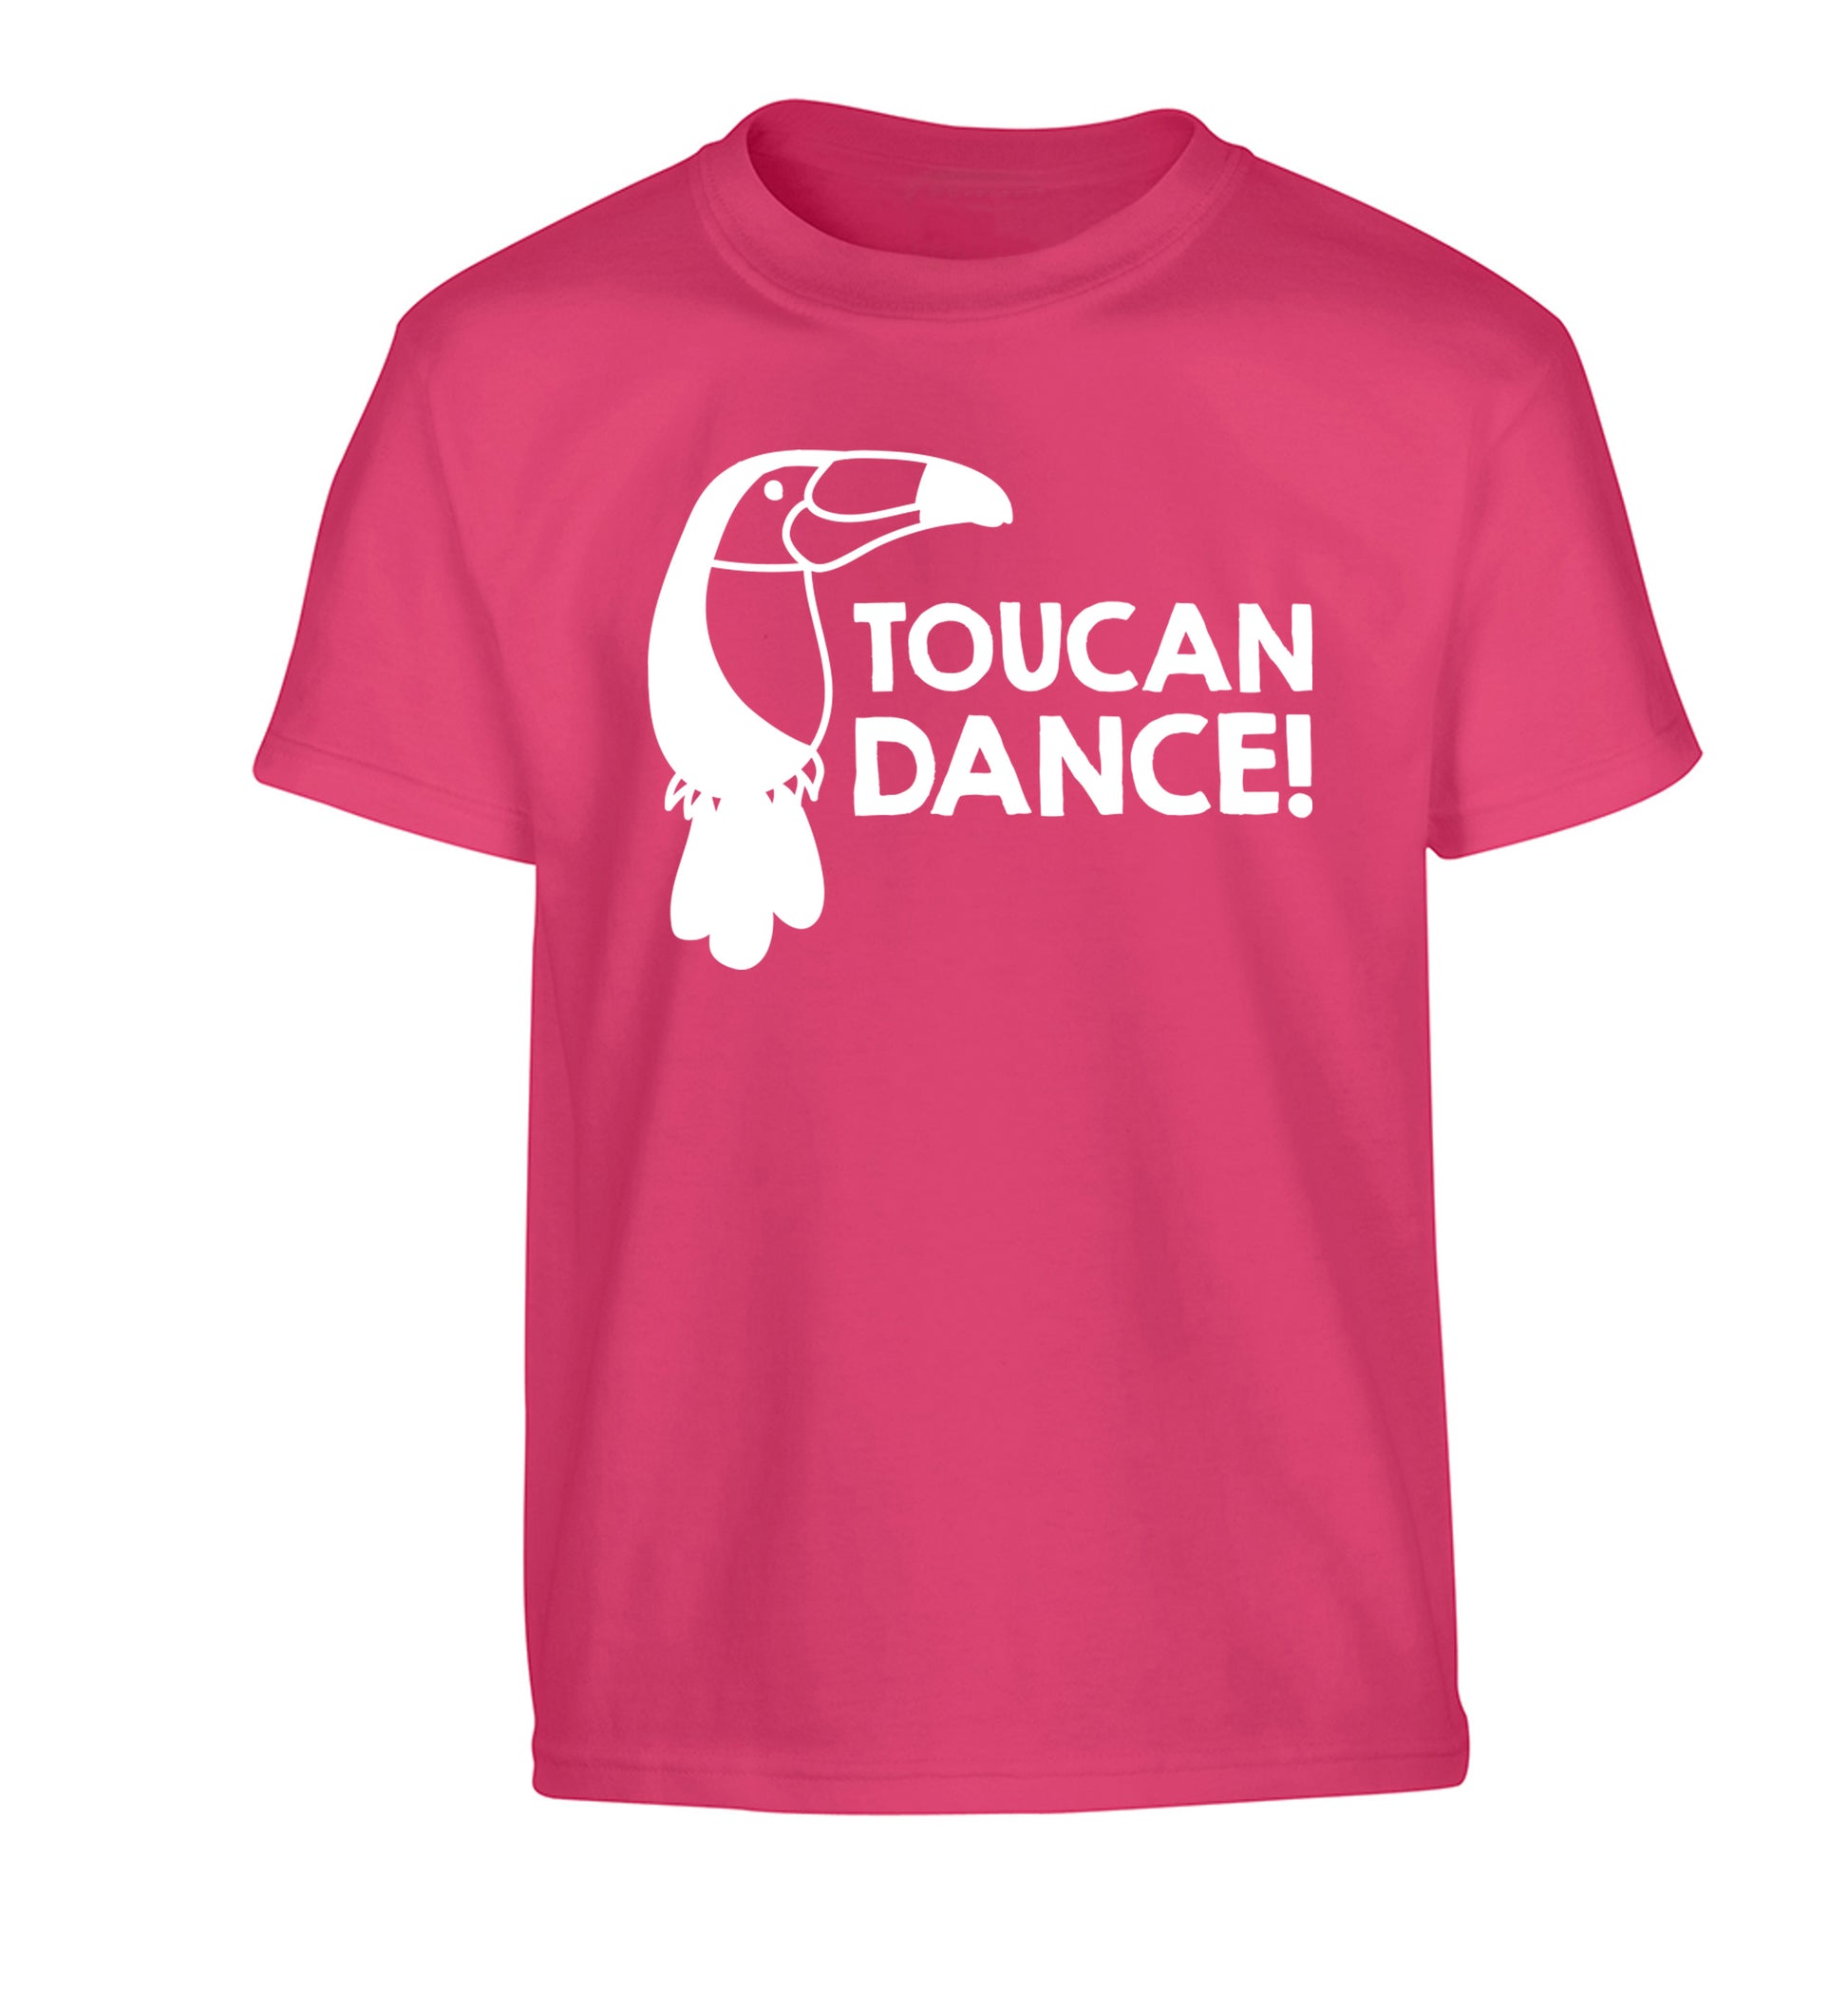 Toucan dance Children's pink Tshirt 12-13 Years